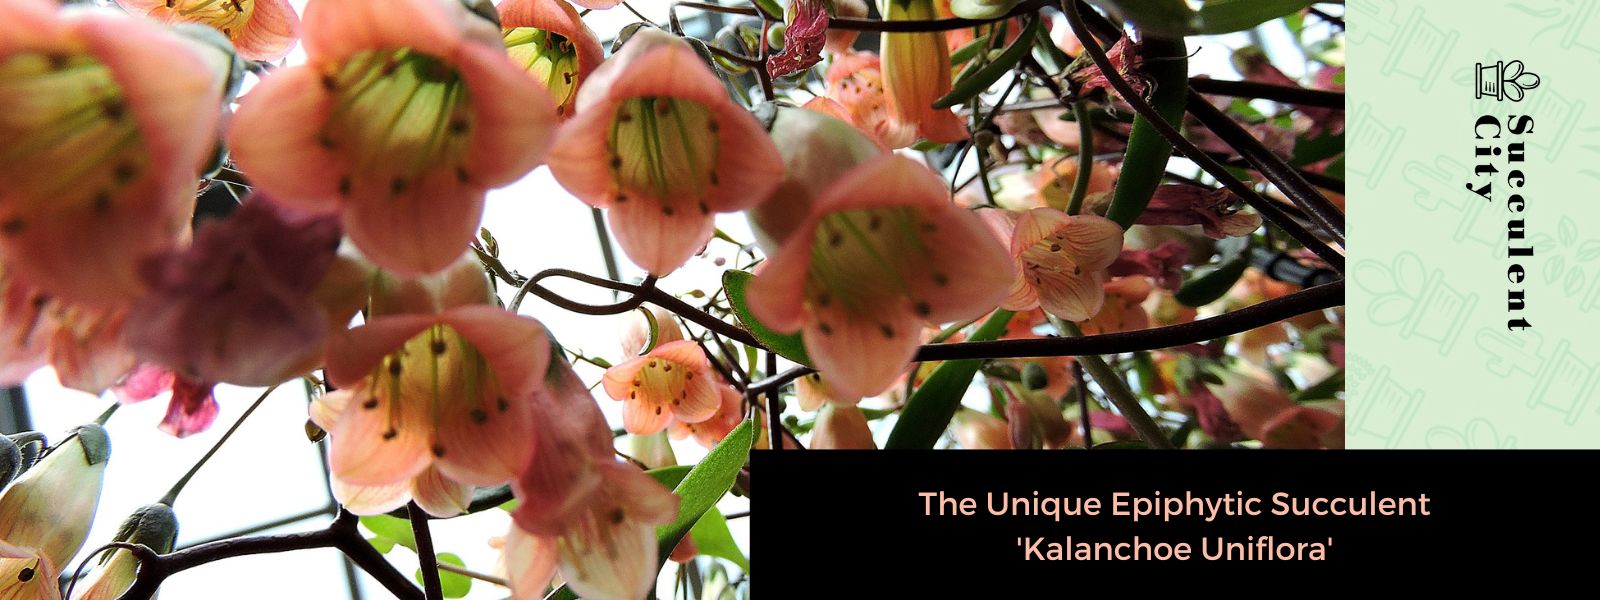 La única suculenta epífita “Kalanchoe Uniflora”